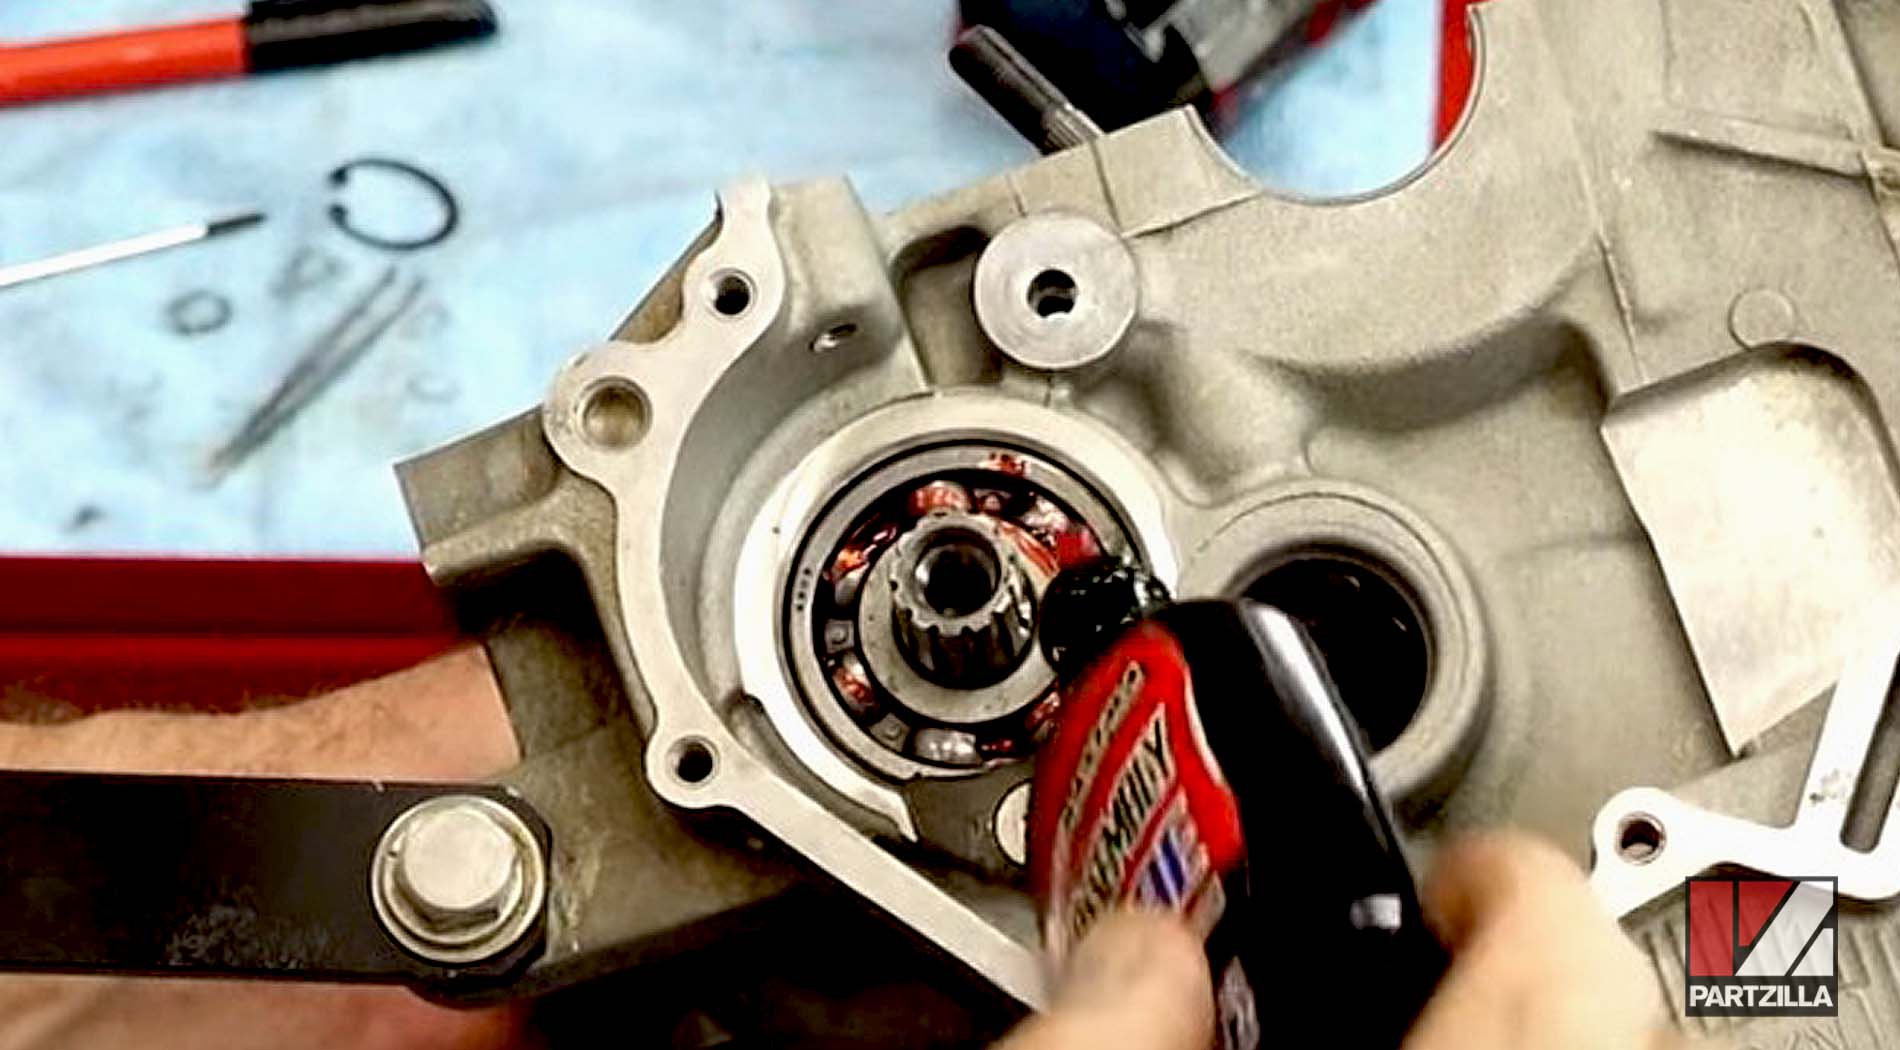 Yamaha YXZ1000R SxS engine rebuild turbo upgrade